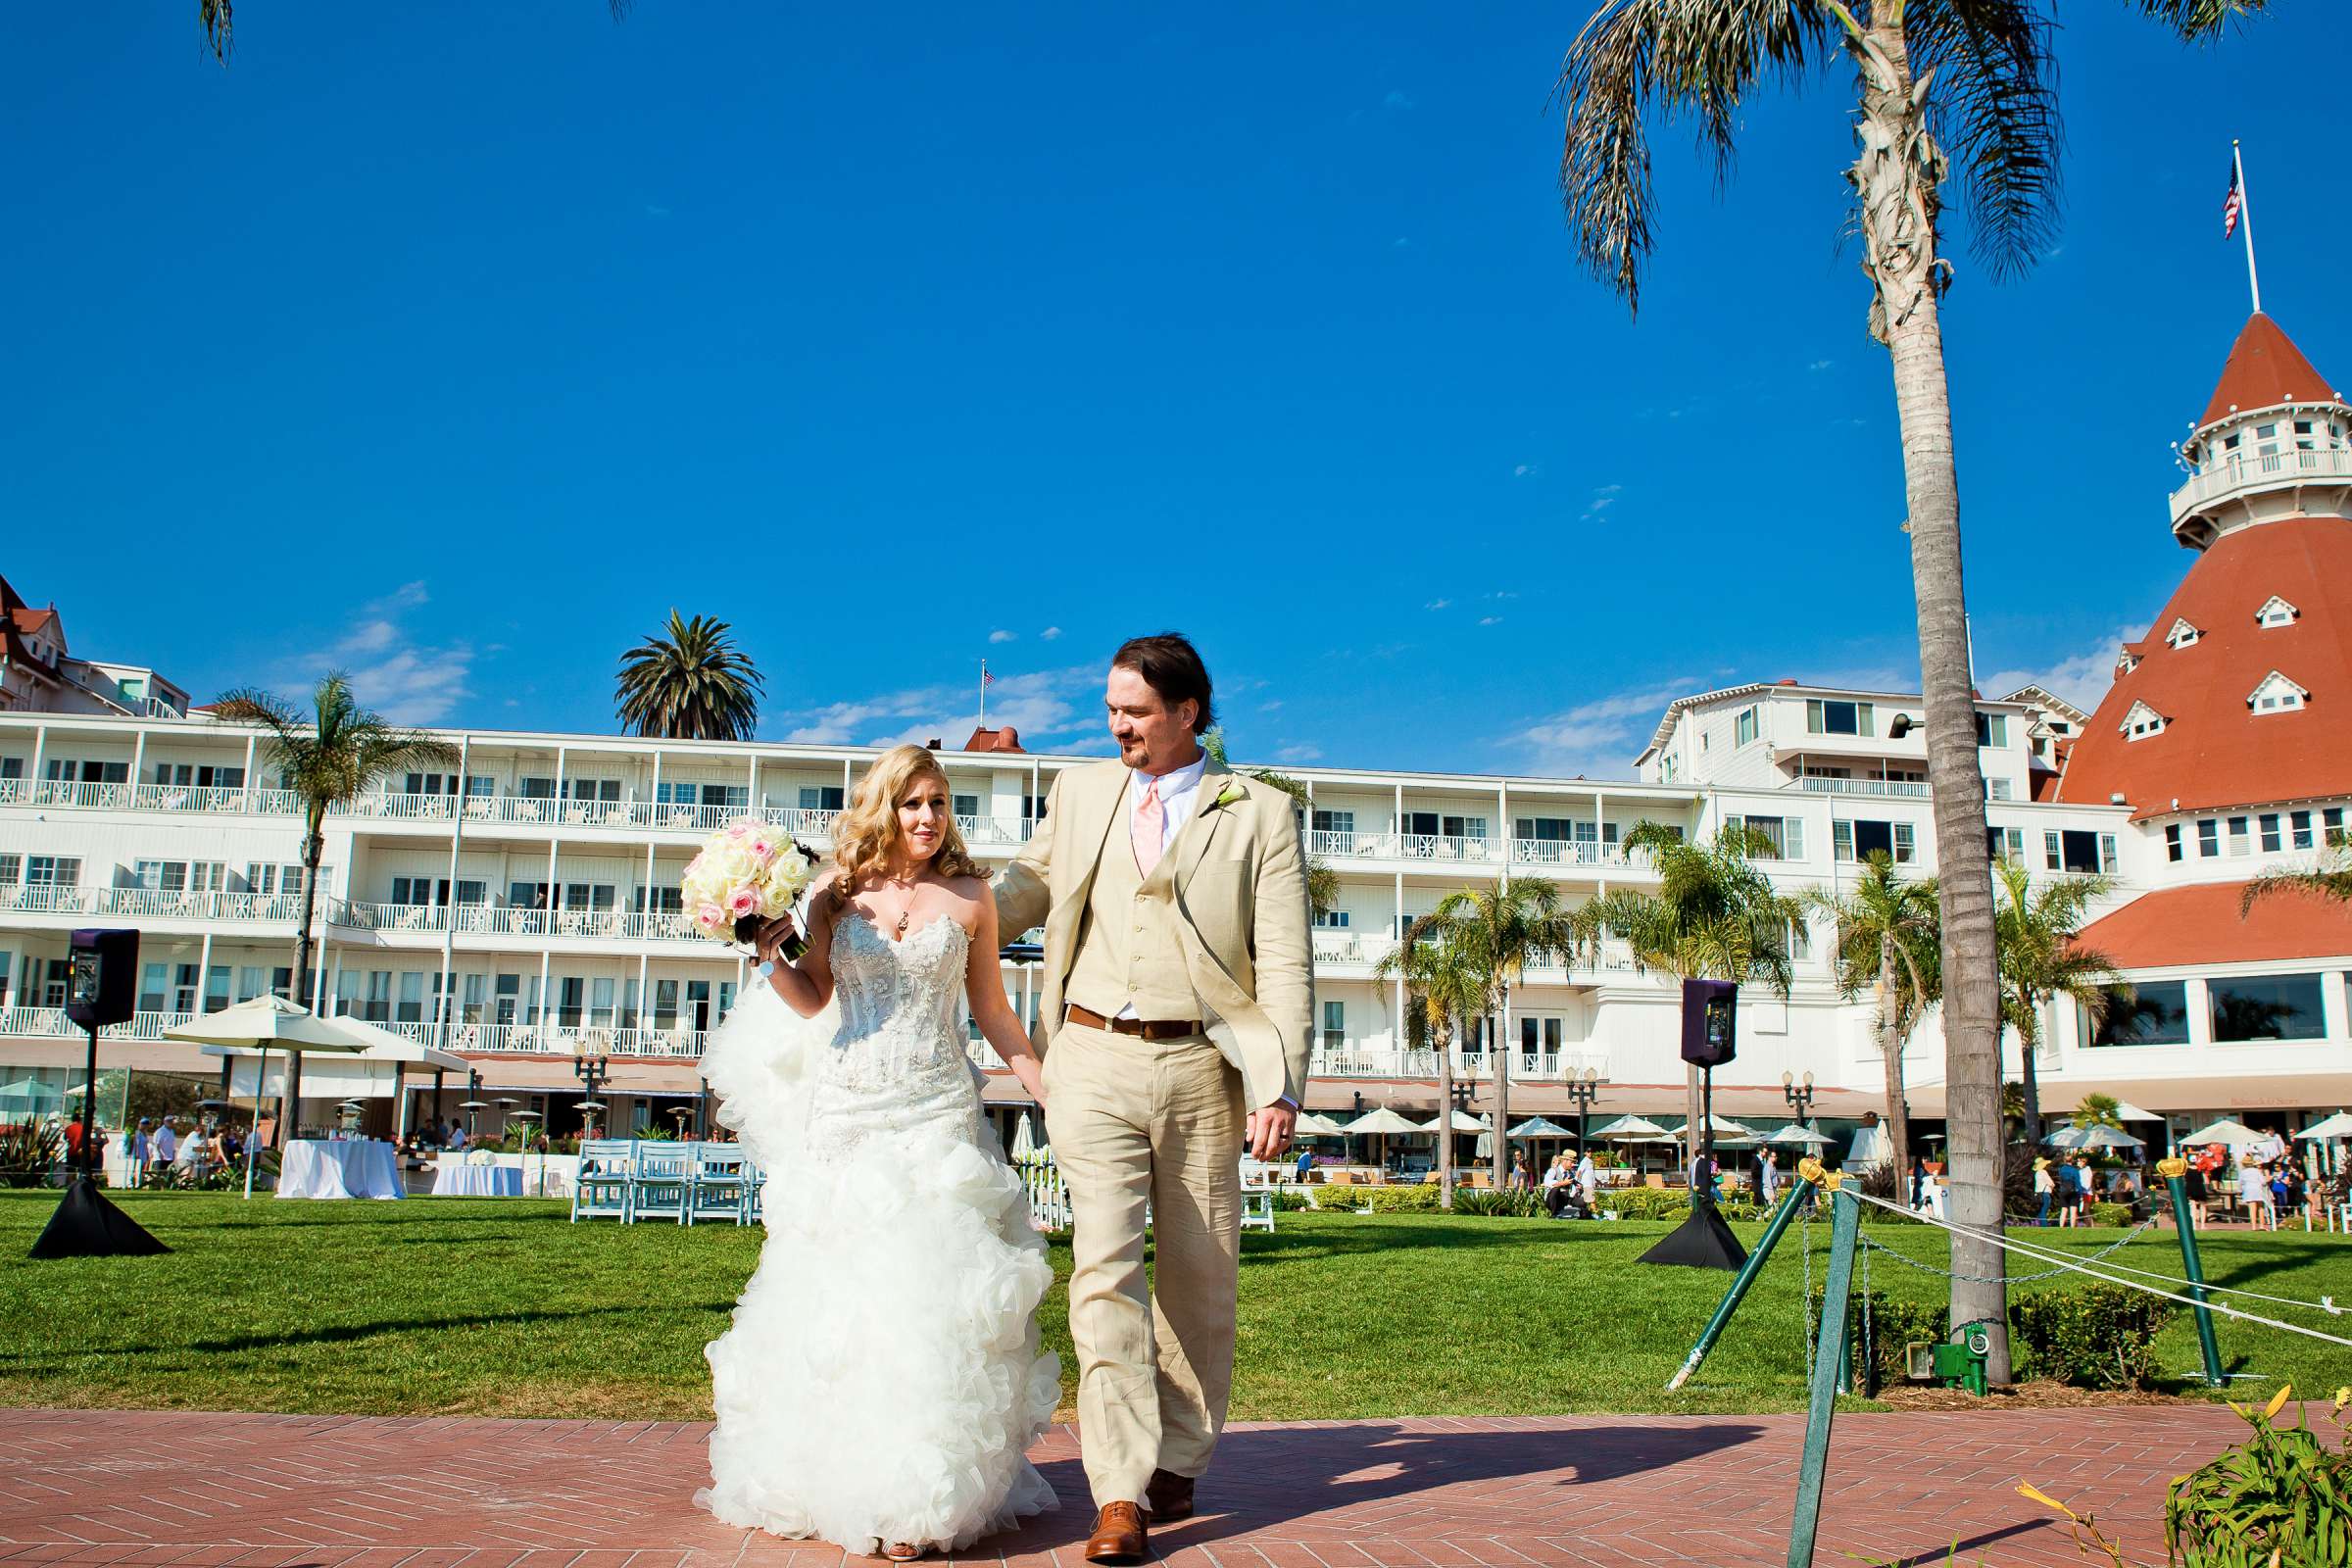 Hotel Del Coronado Wedding, Sarah and Tony Wedding Photo #323720 by True Photography